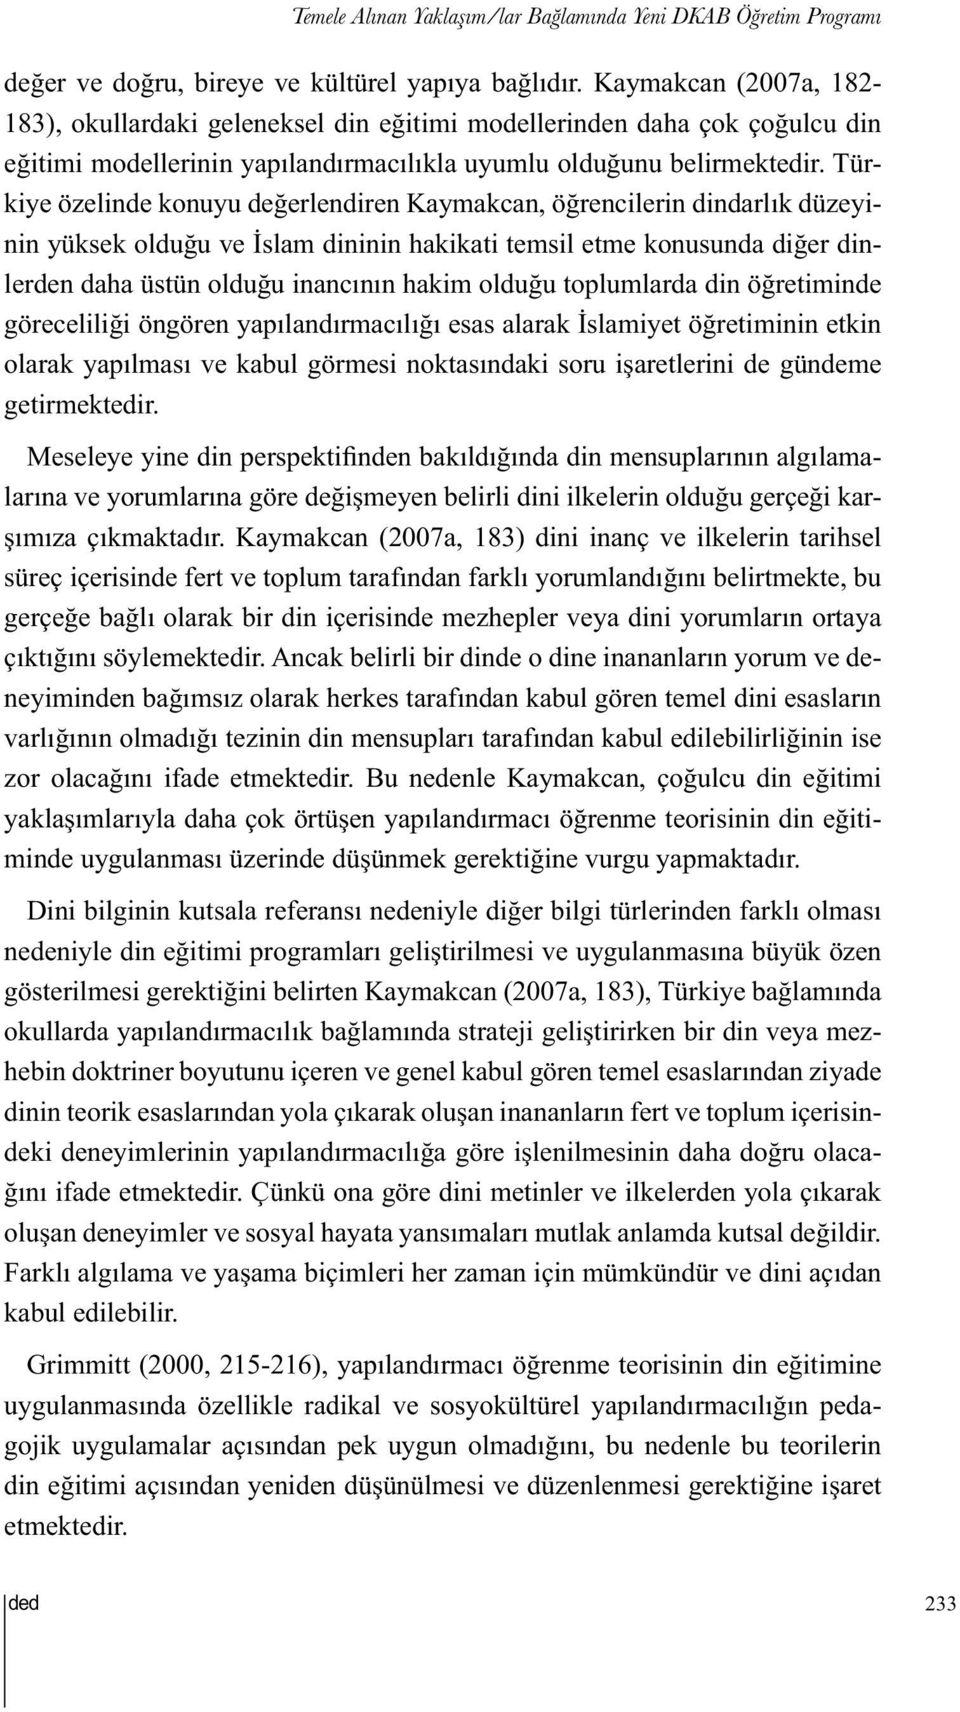 Türkiye özelinde konuyu değerlendiren Kaymakcan, öğrencilerin dindarlık düzeyinin yüksek olduğu ve İslam dininin hakikati temsil etme konusunda diğer dinlerden daha üstün olduğu inancının hakim